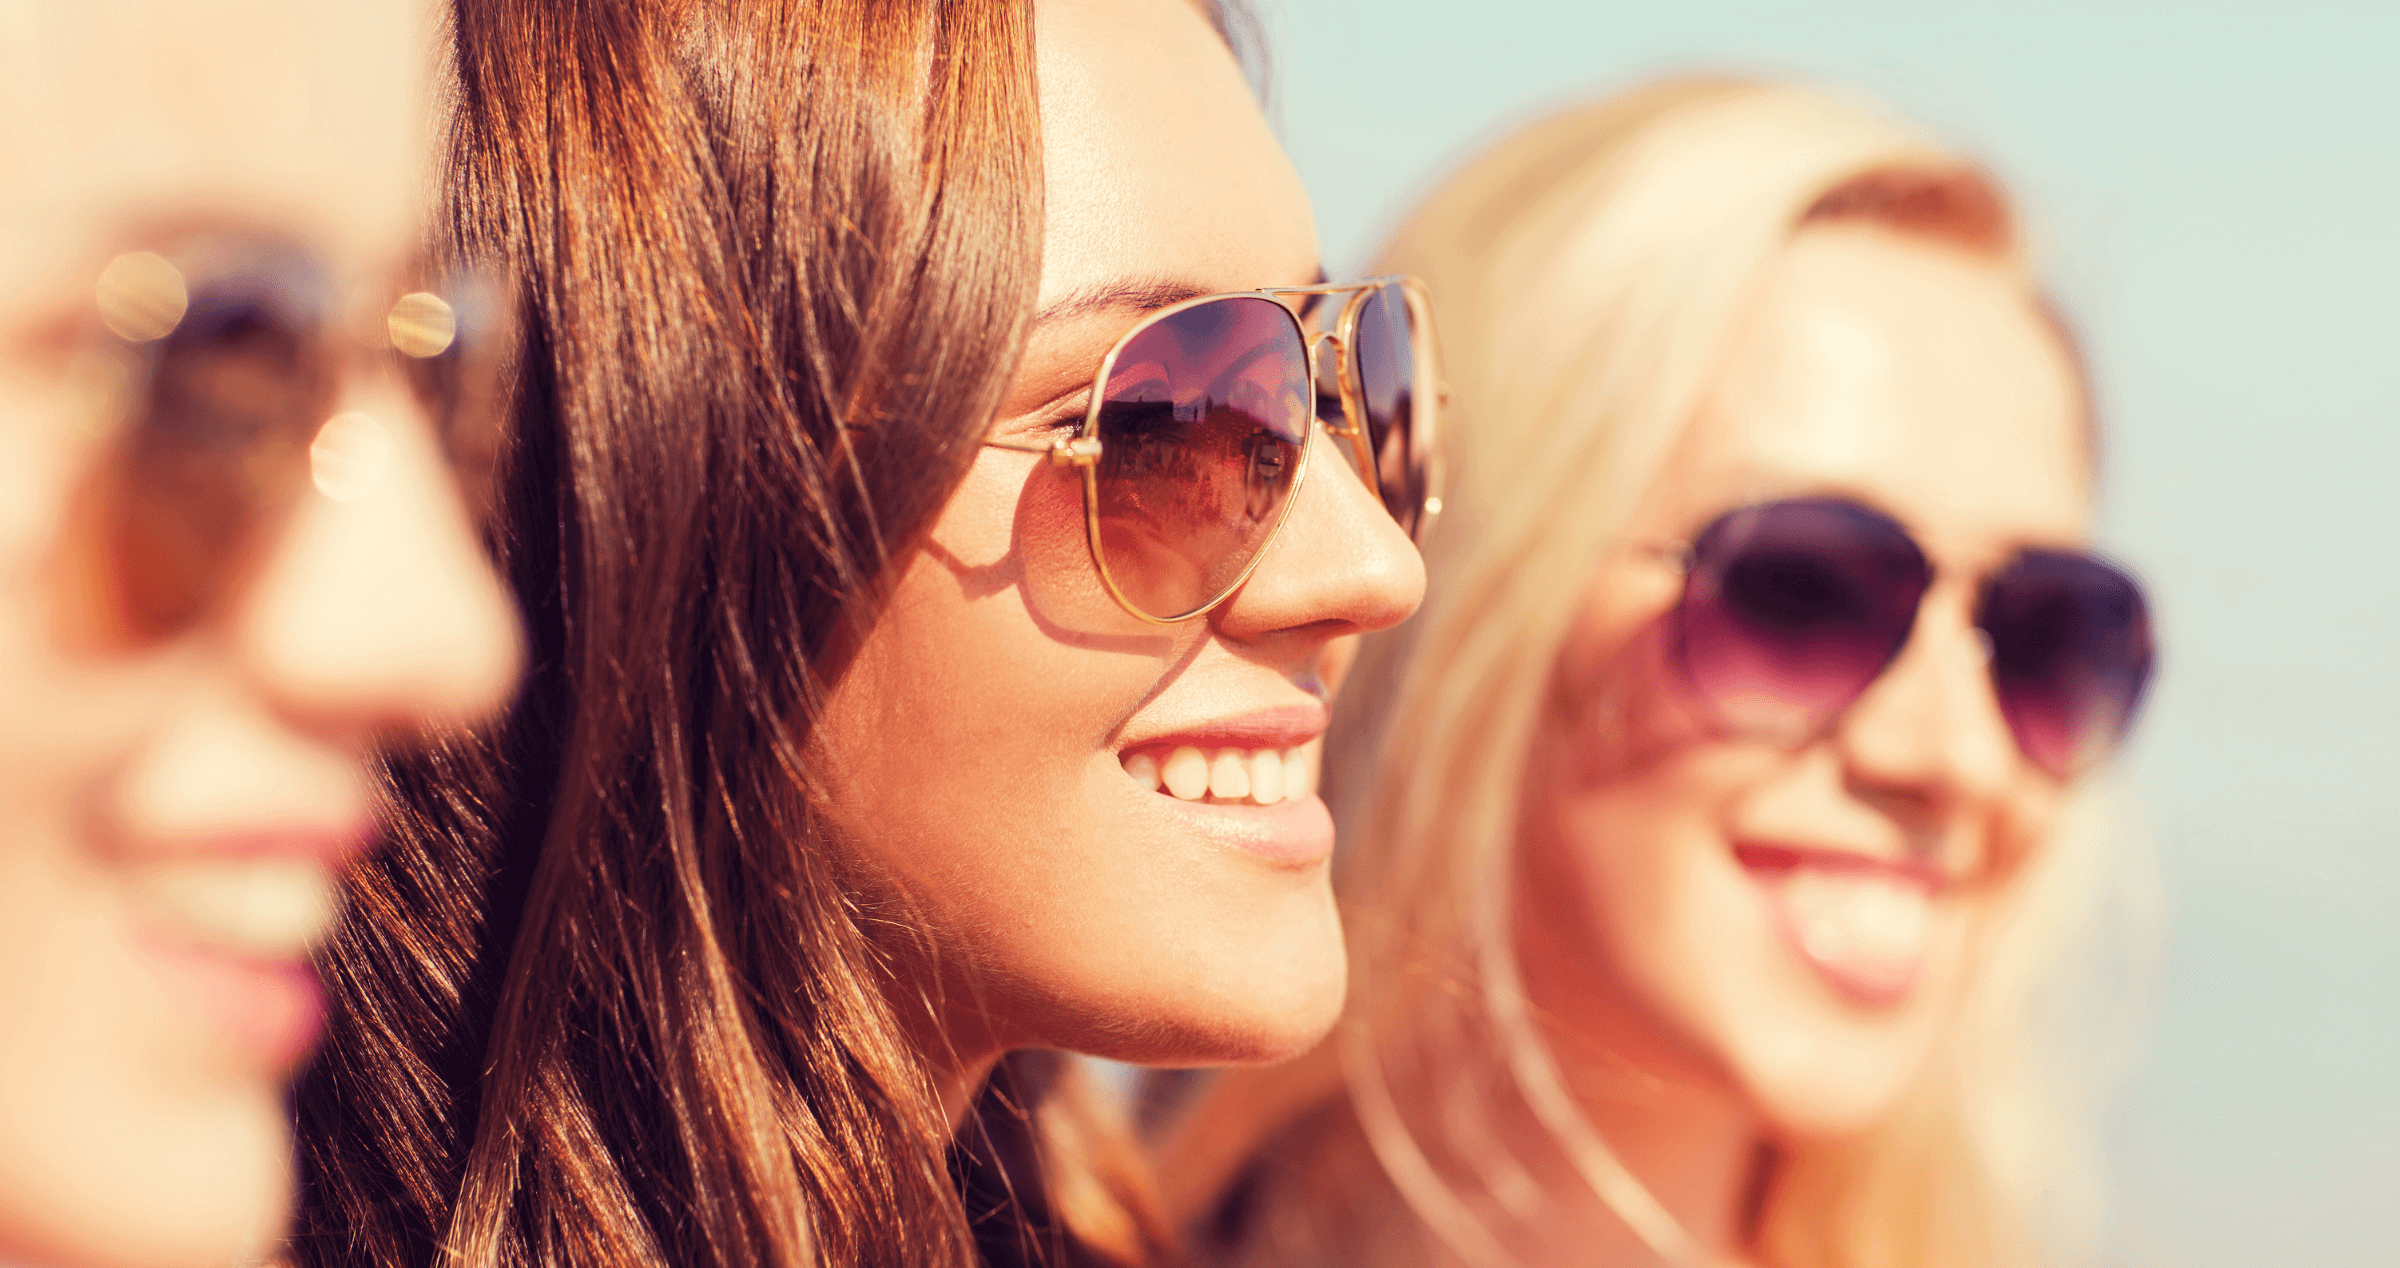 Three women wearing aviator sunglasses